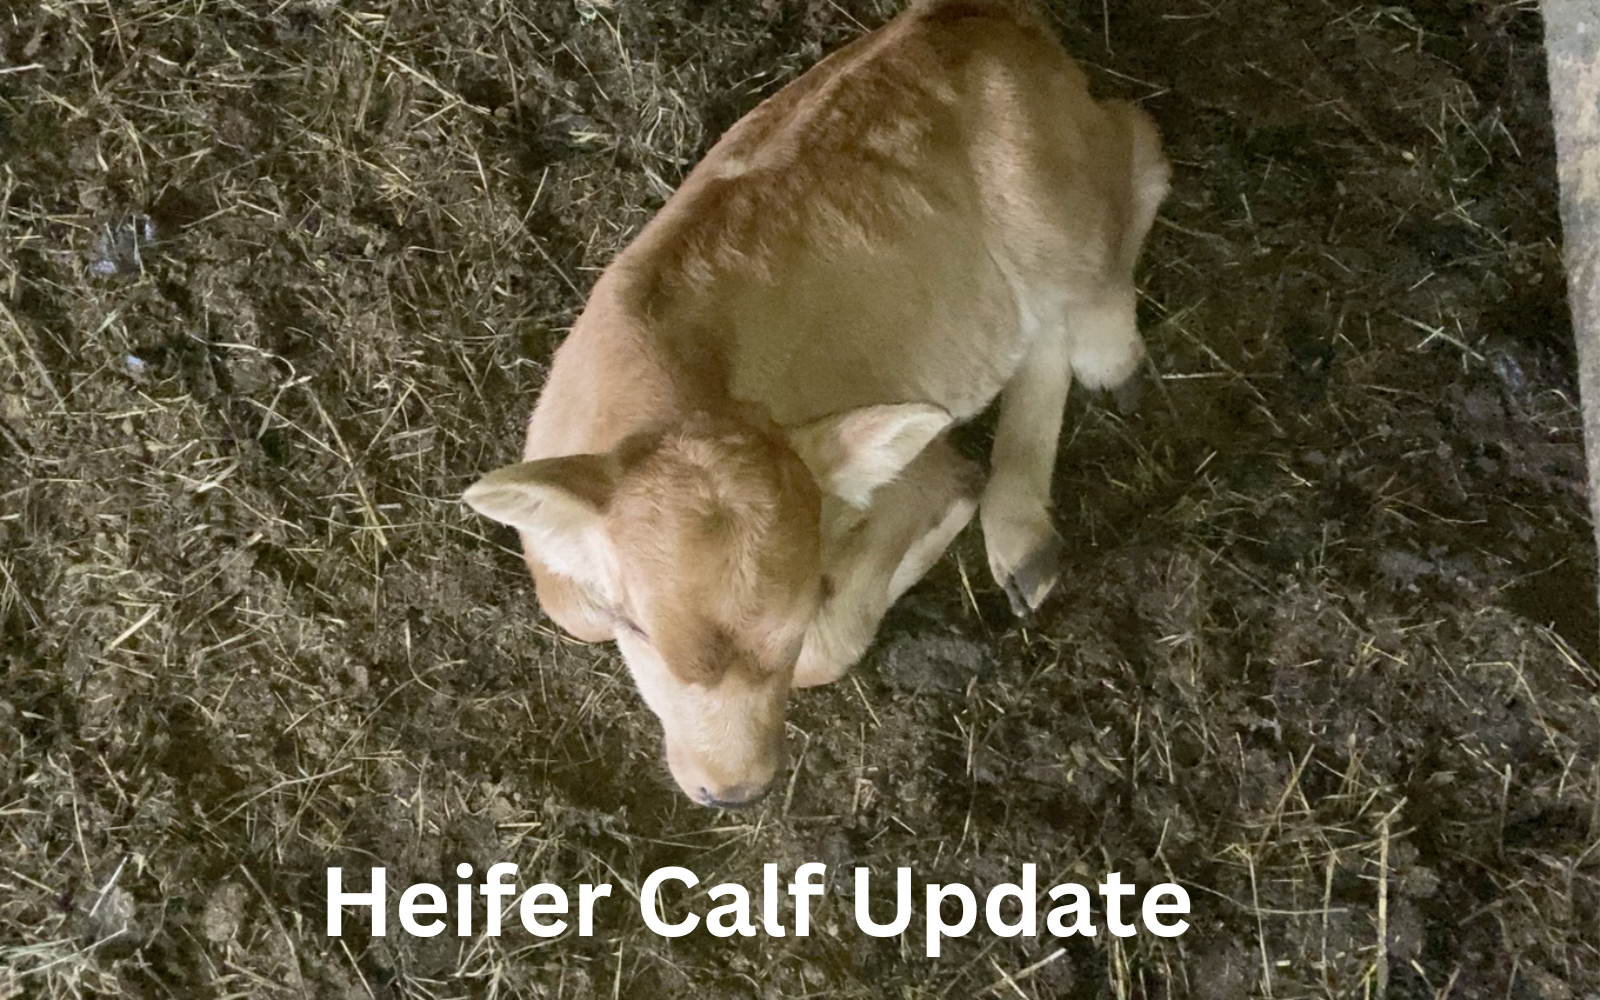 Heifer Calf Update